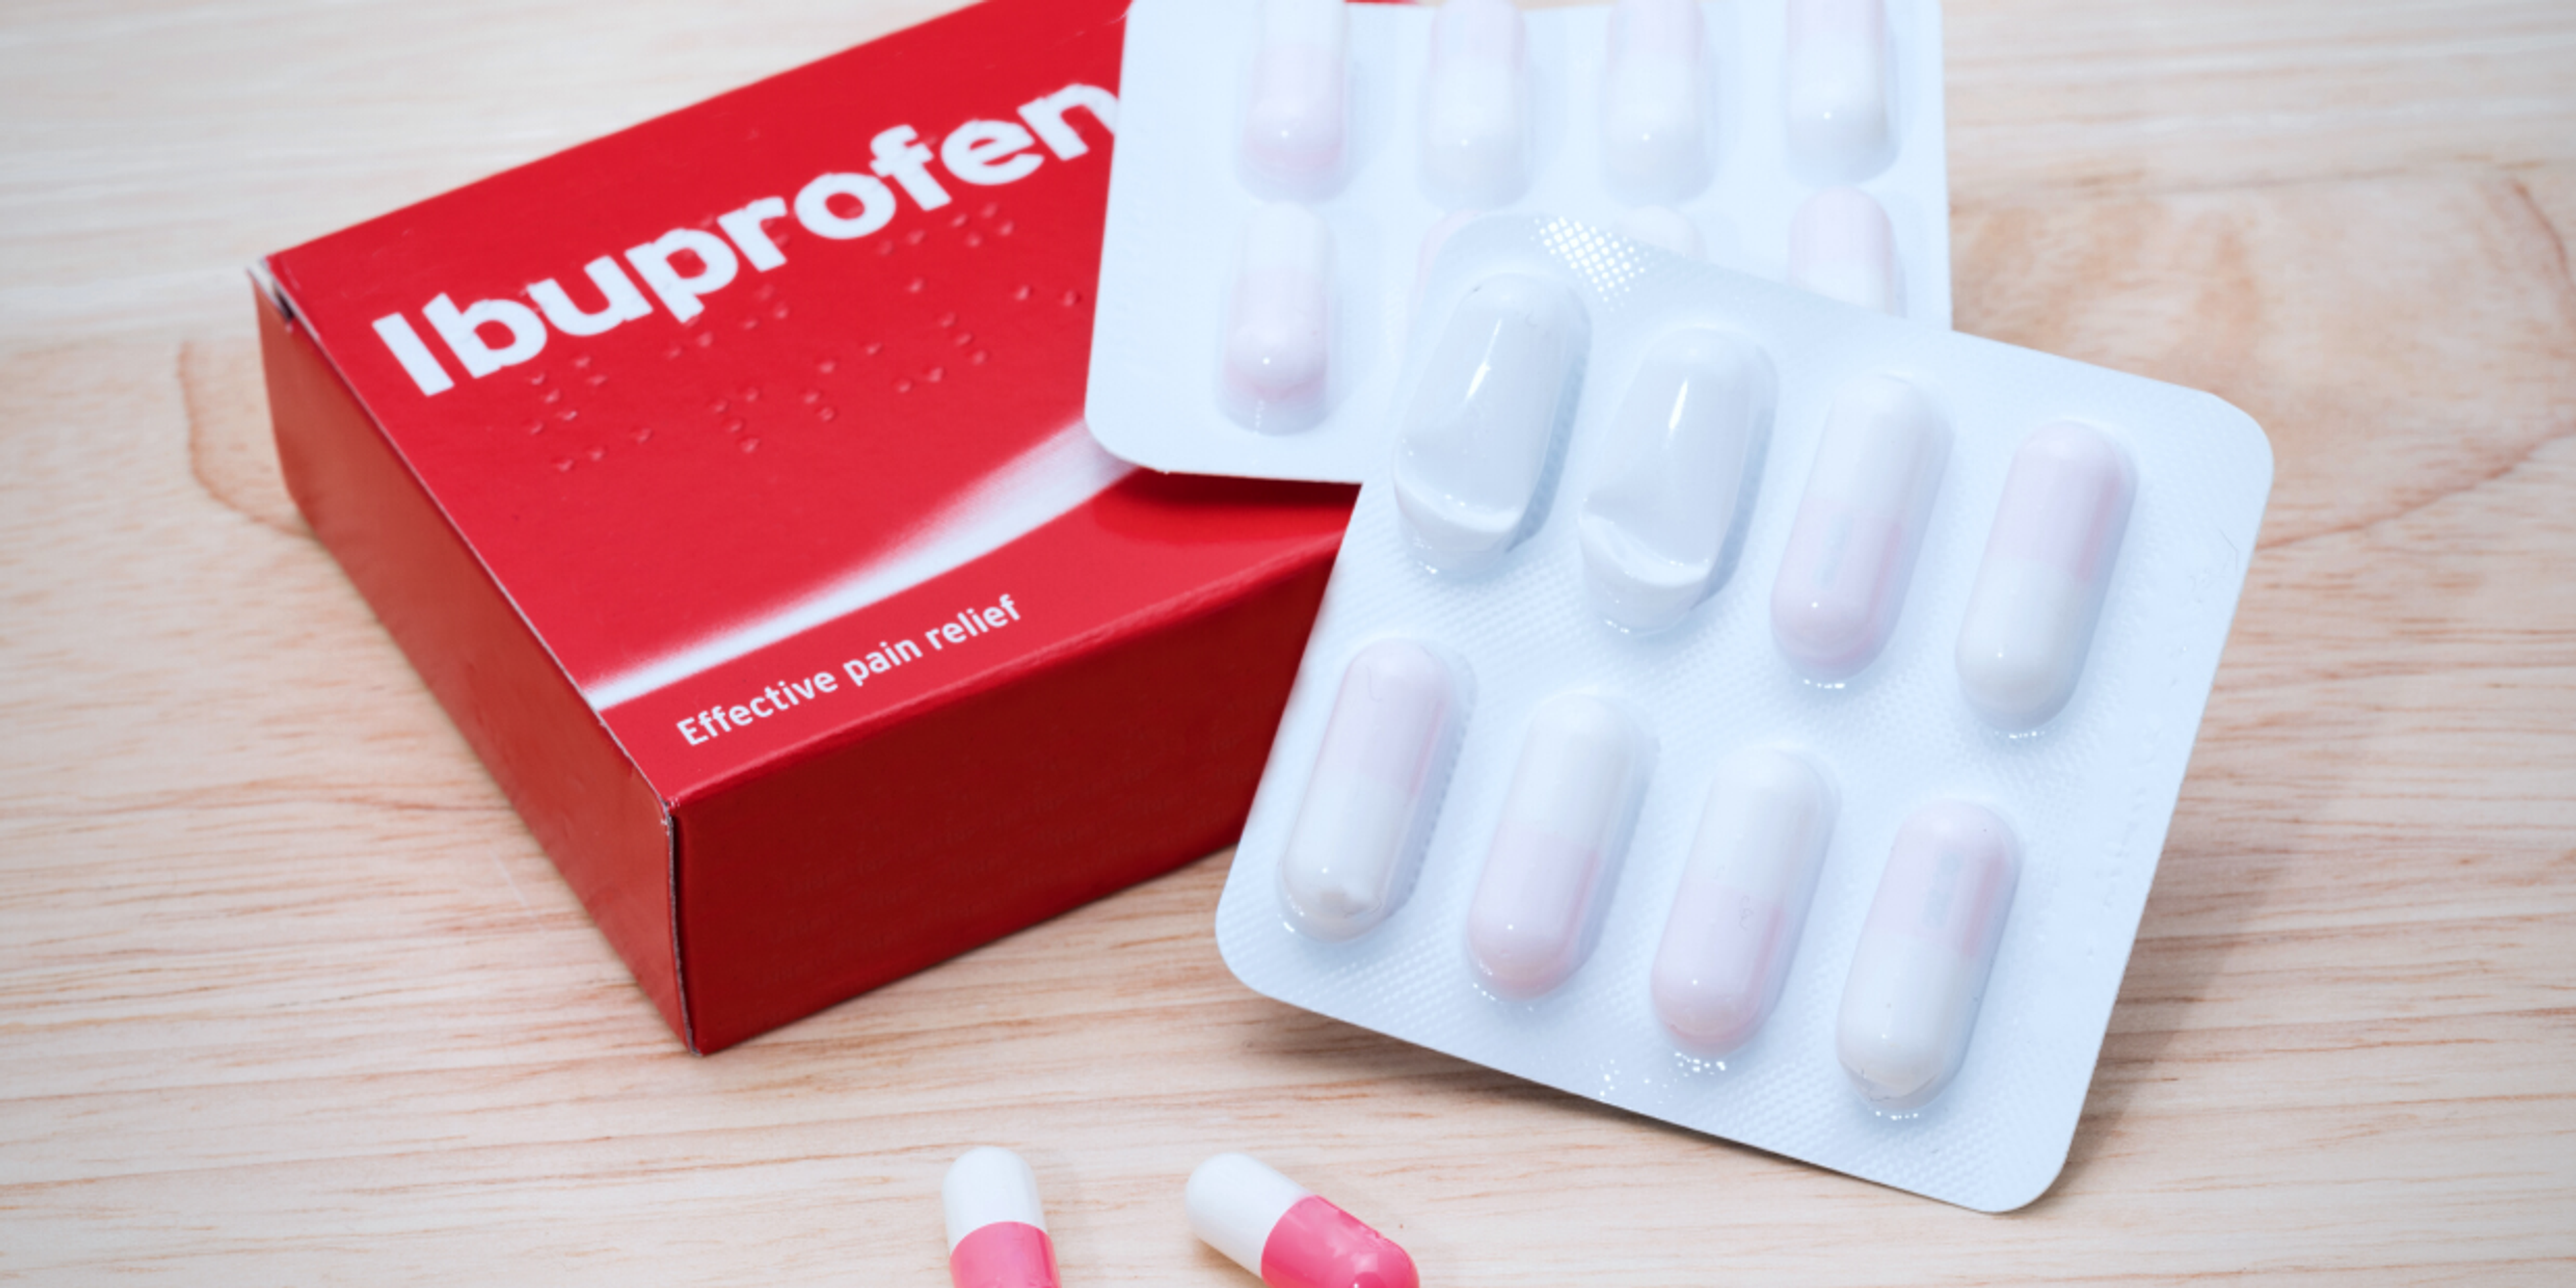 Ibuprofen anti-inflammatory medication 